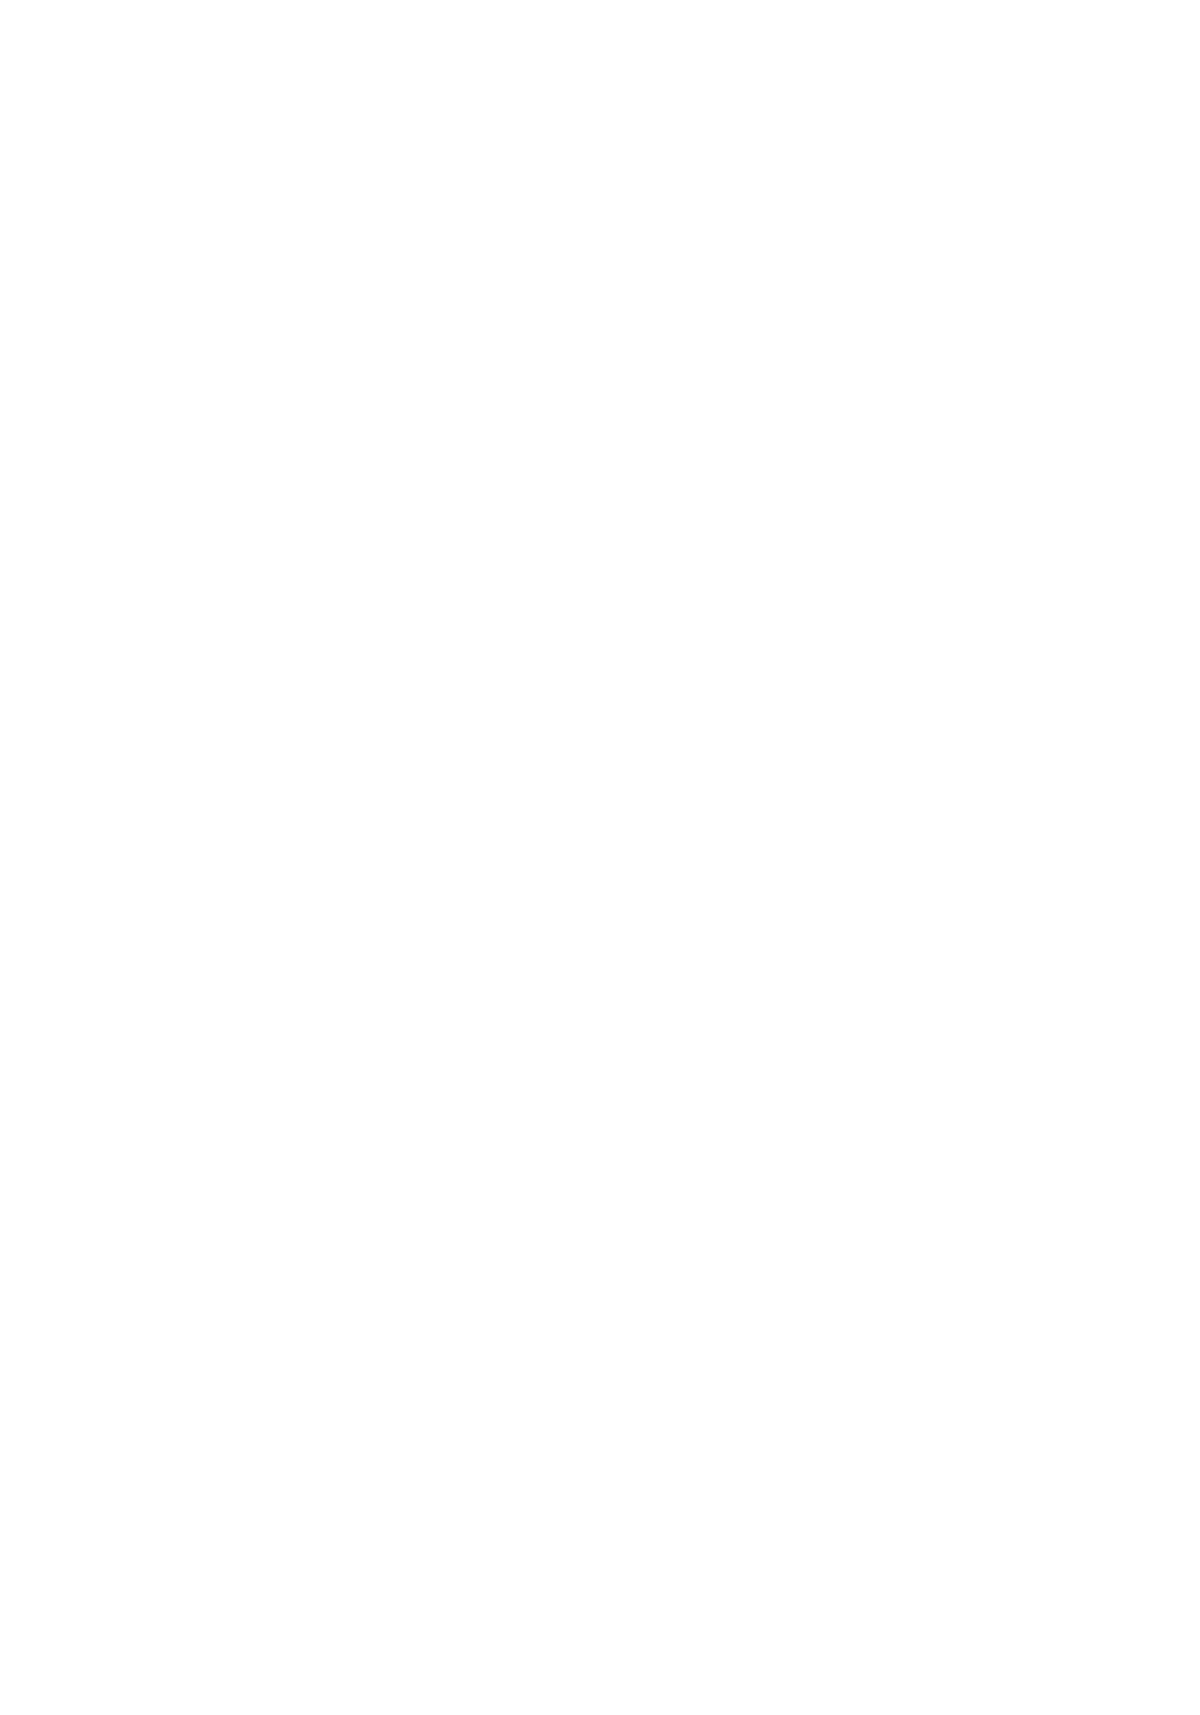 [ブロンコ一人旅 (内々けやき)] 第二次僕の私のスーパーボボッボ大戦ZZ シオマルマリ三おっぱい決戦編 (スーパーロボット大戦) [DL版]